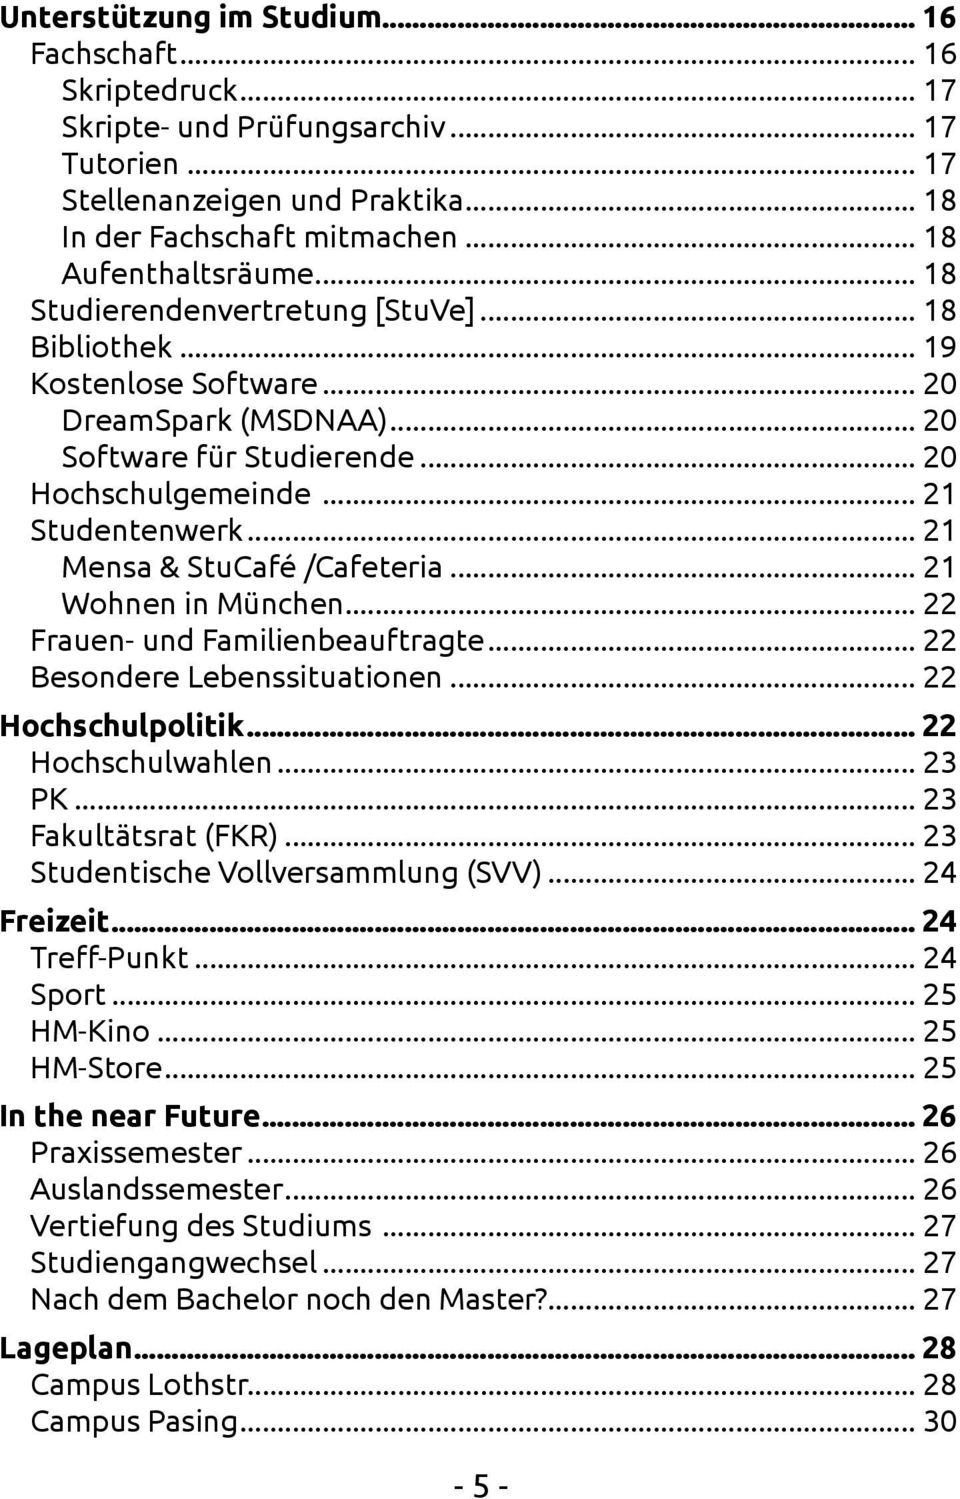 .. 21 Mensa & StuCafé /Cafeteria... 21 Wohnen in München... 22 Frauen- und Familienbeauftragte... 22 Besondere Lebenssituationen... 22 Hochschulpolitik... 22 Hochschulwahlen... 23 PK.